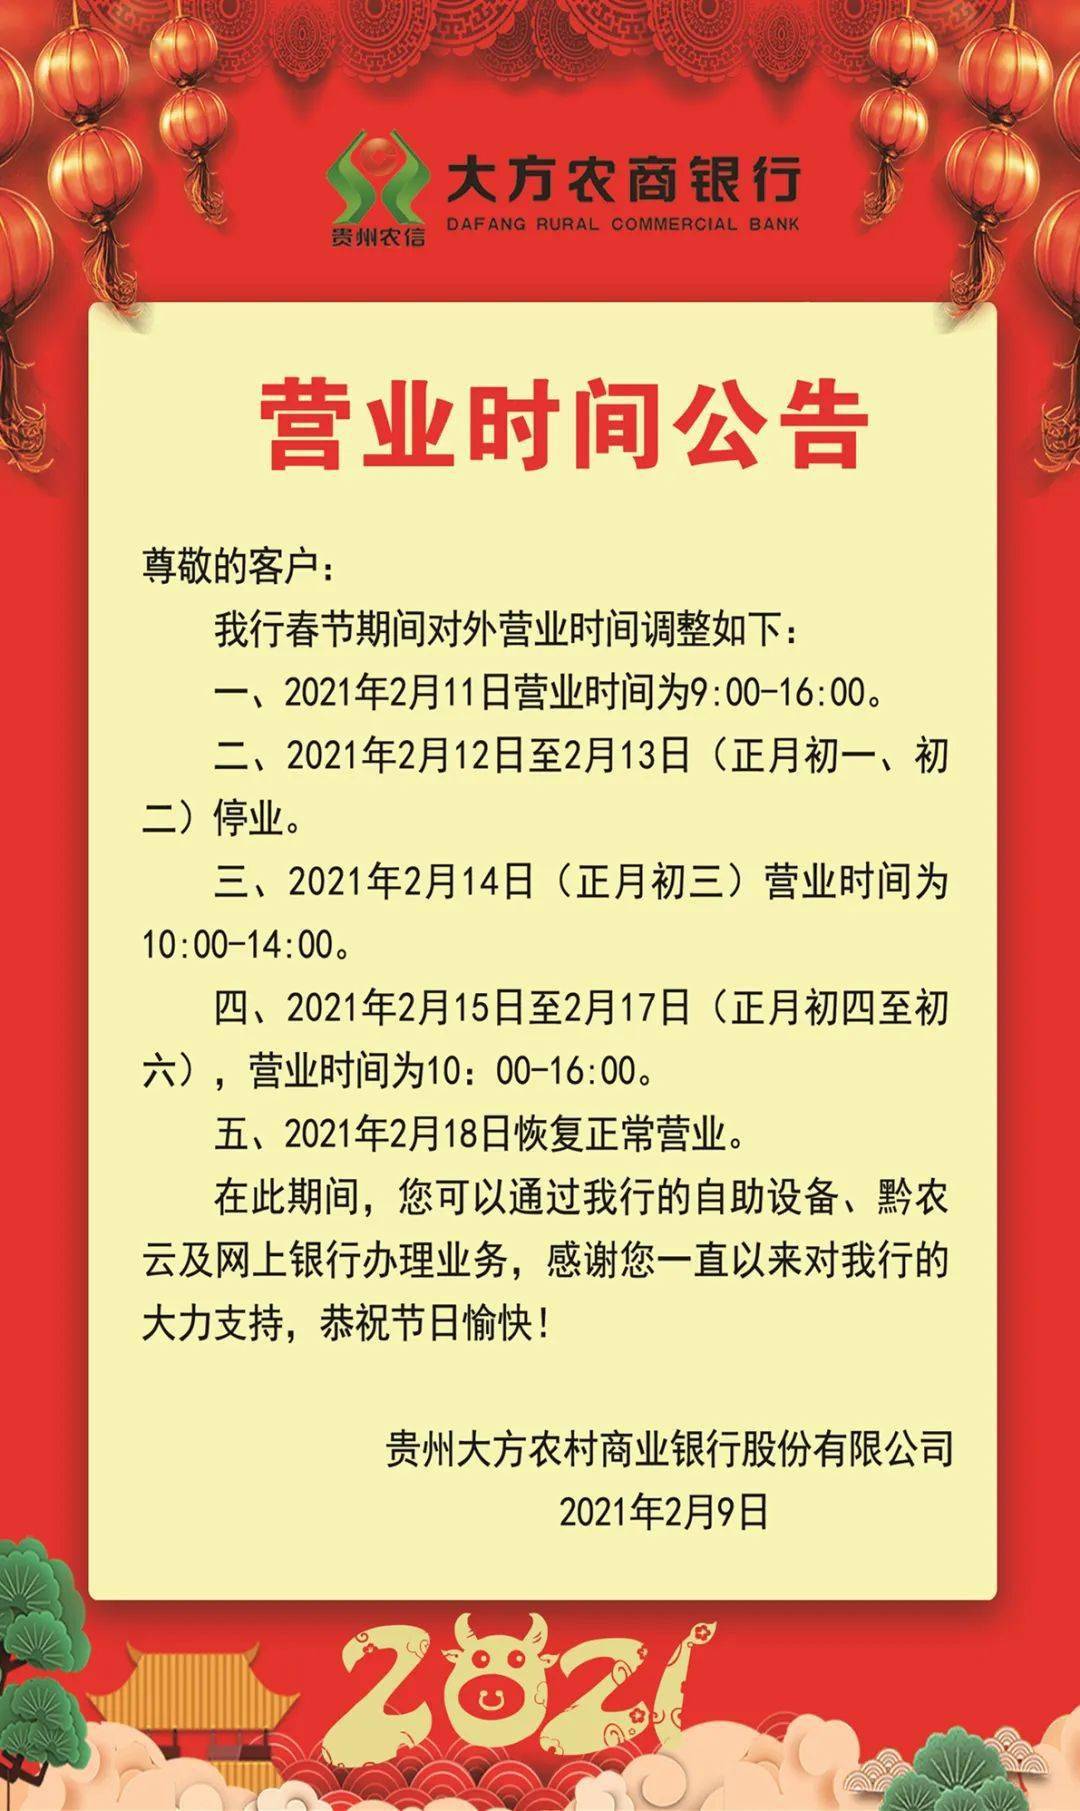 贵州大方农商银行2021年春节期间对外营业时间公告